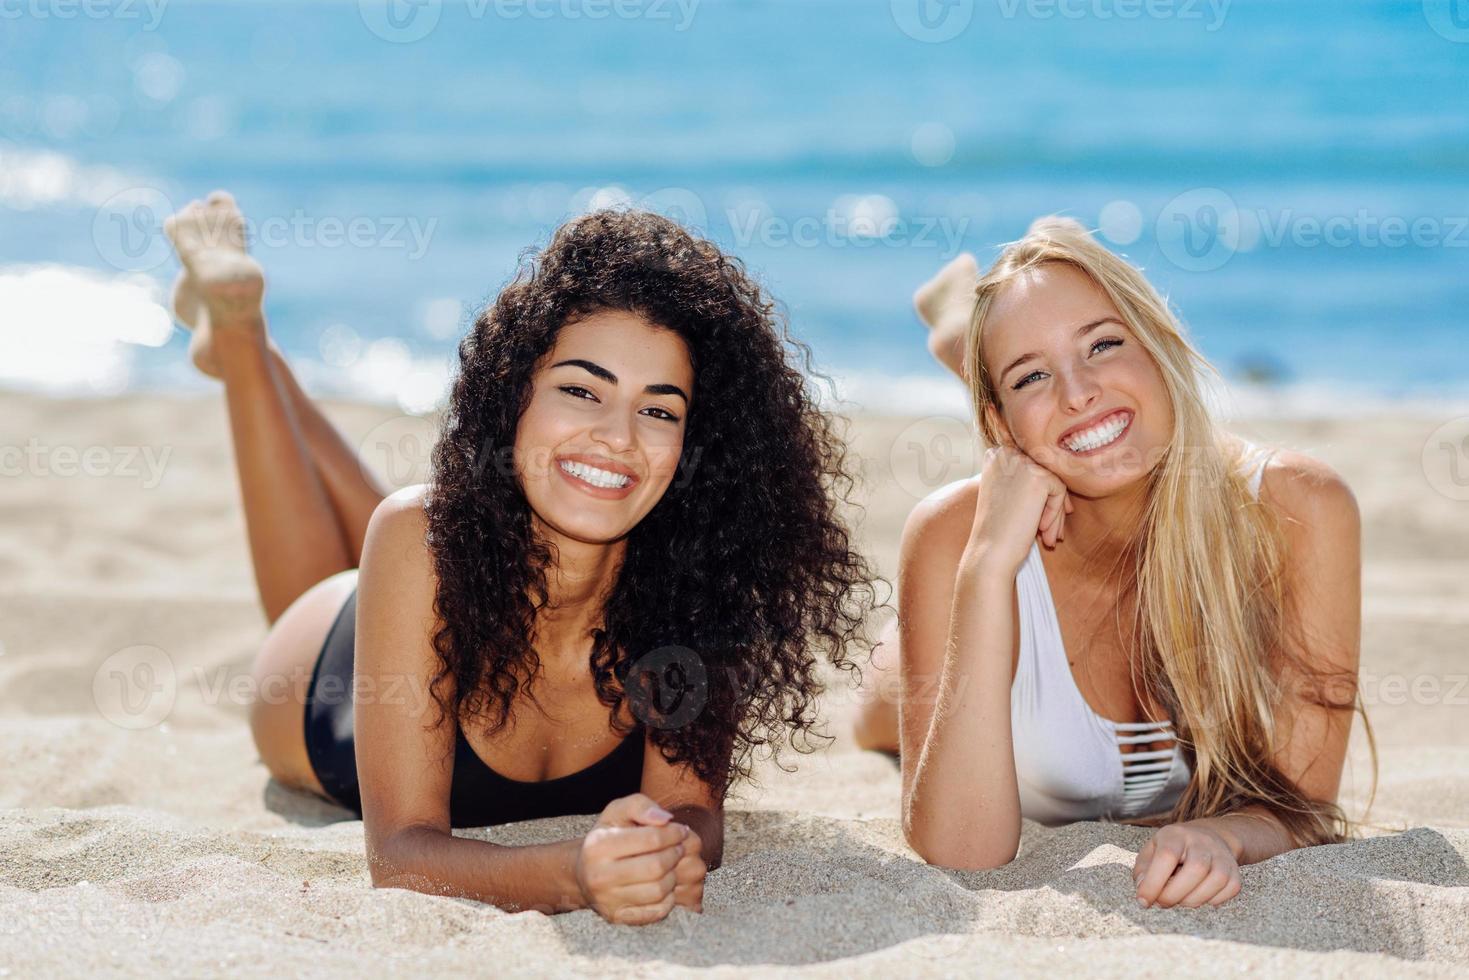 duas mulheres jovens com belos corpos em maiô em uma praia tropical foto